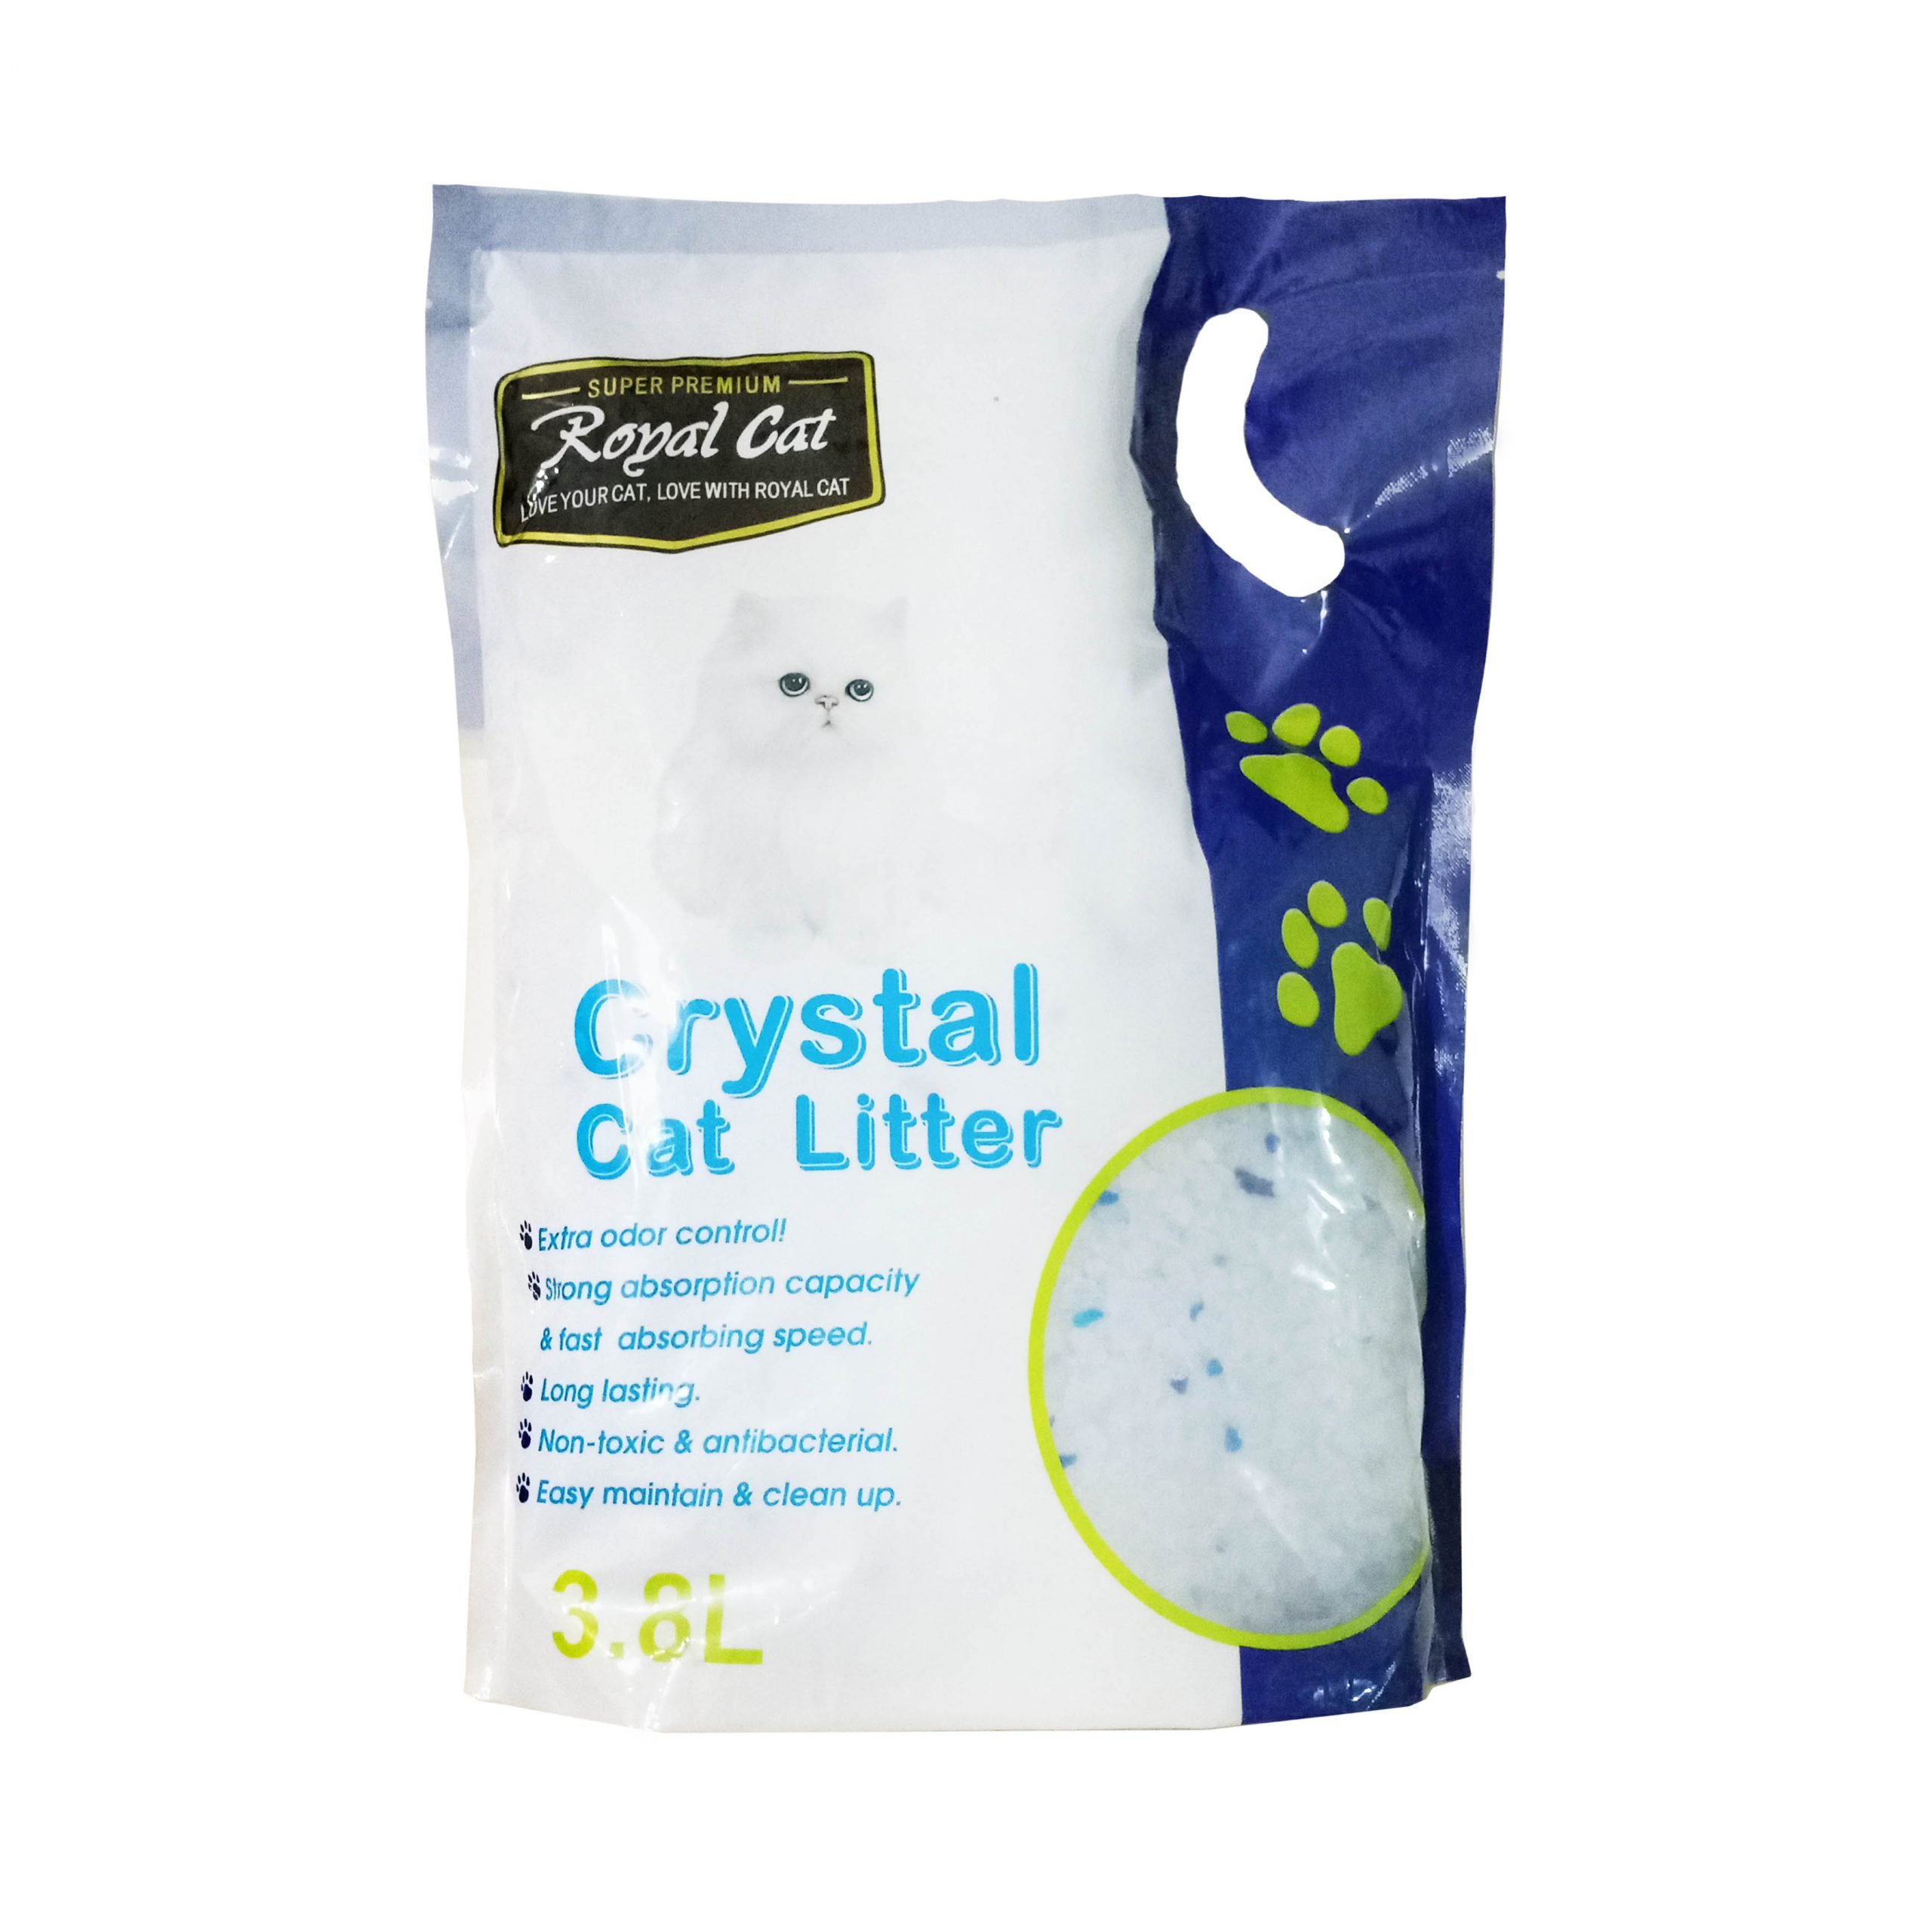 Royal Cat Crystals Cat Litter 3.8 L Happet